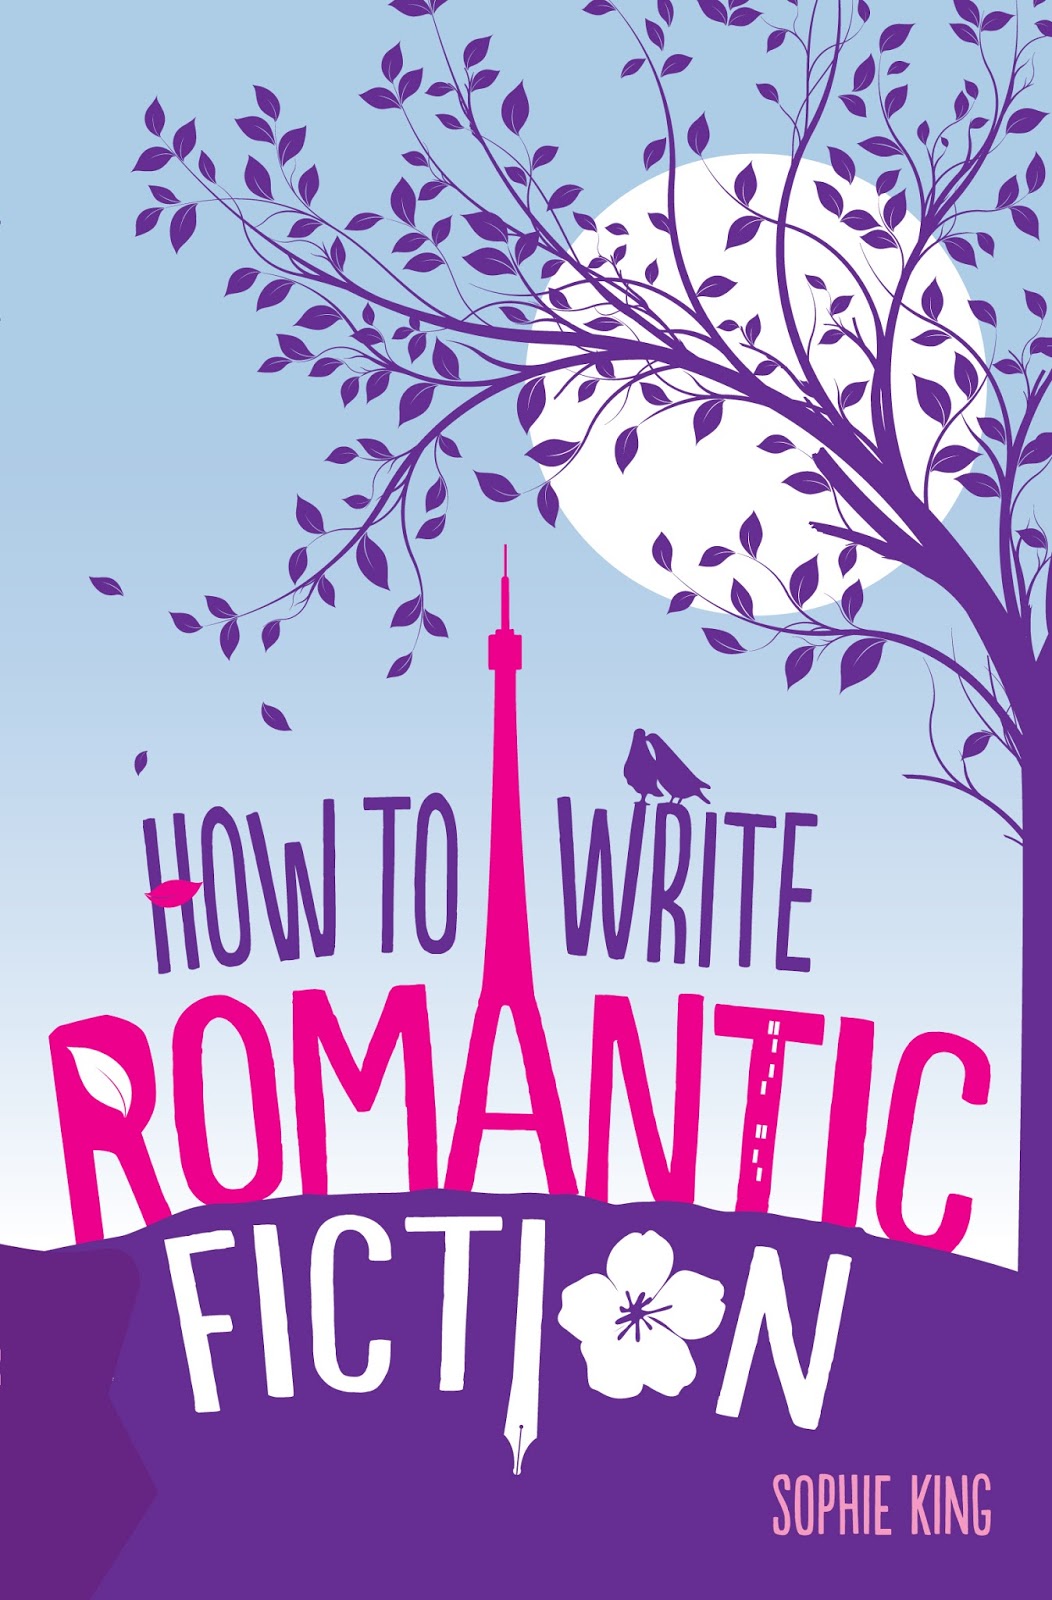 Romance fiction